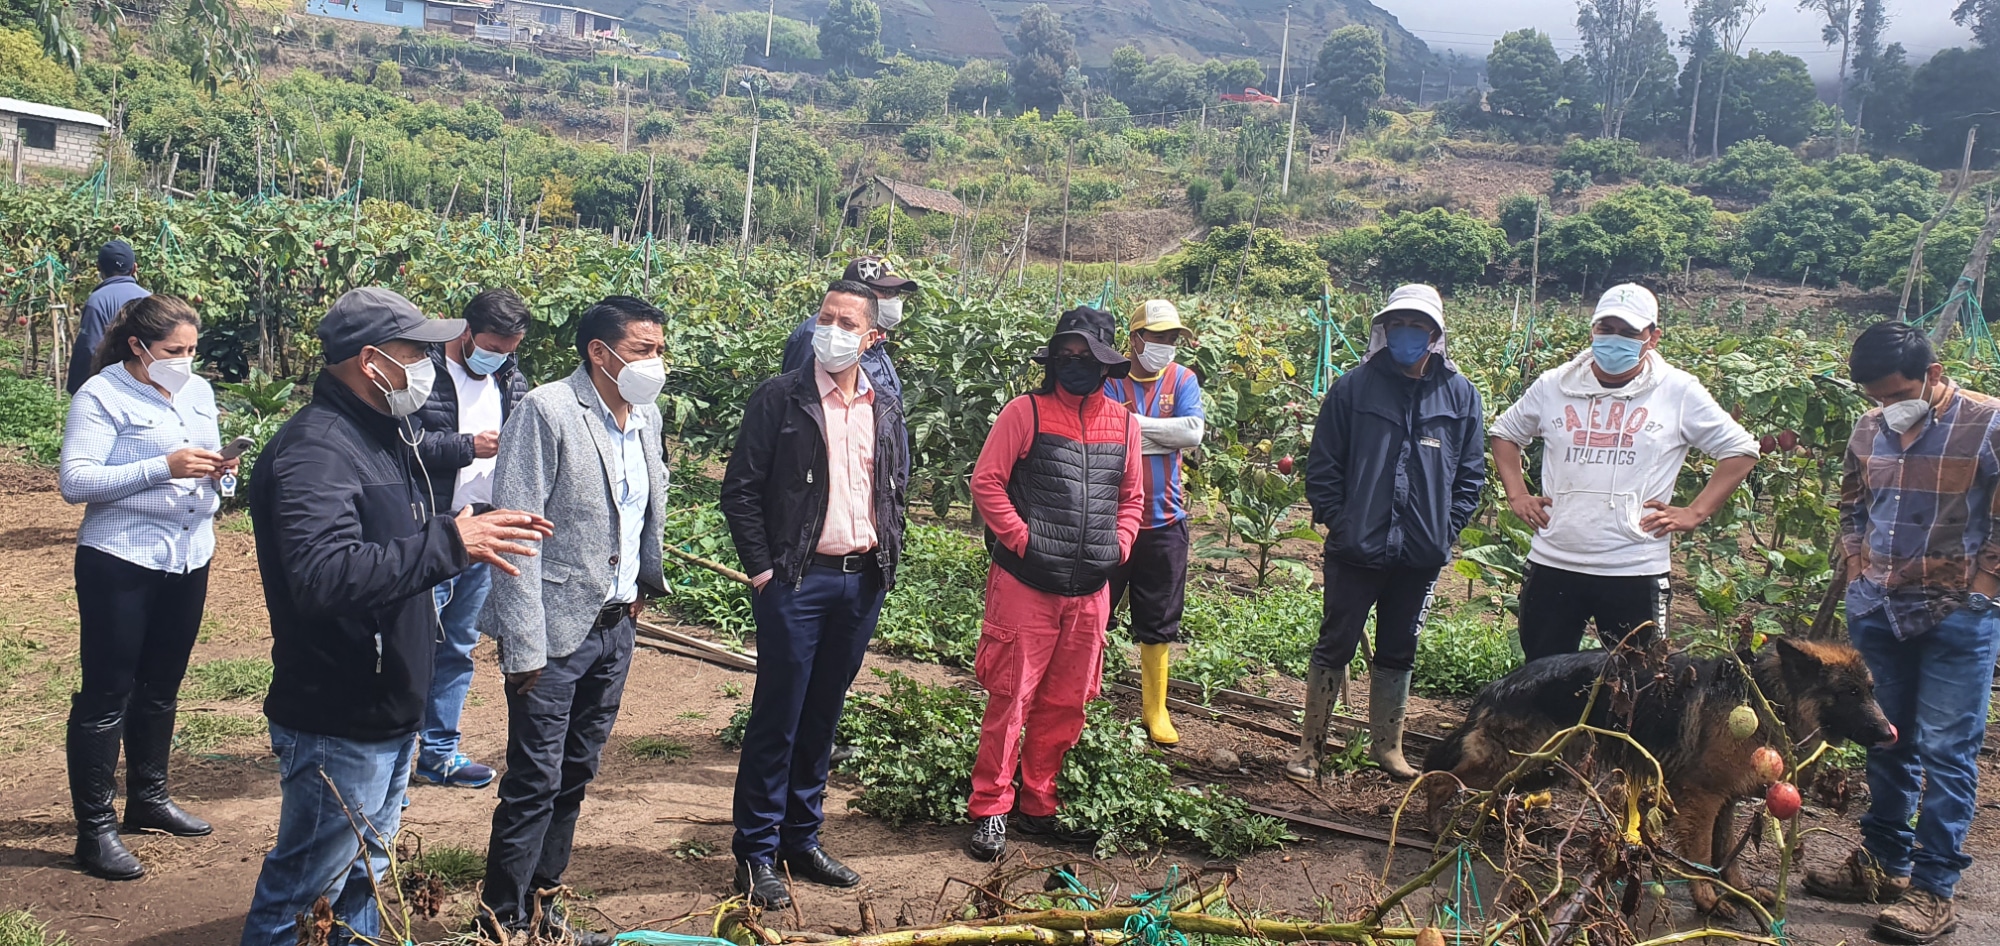 Los técnicos de Planifica Ecuador visitaron el proyecto de riego en Patate (Tungurahua).